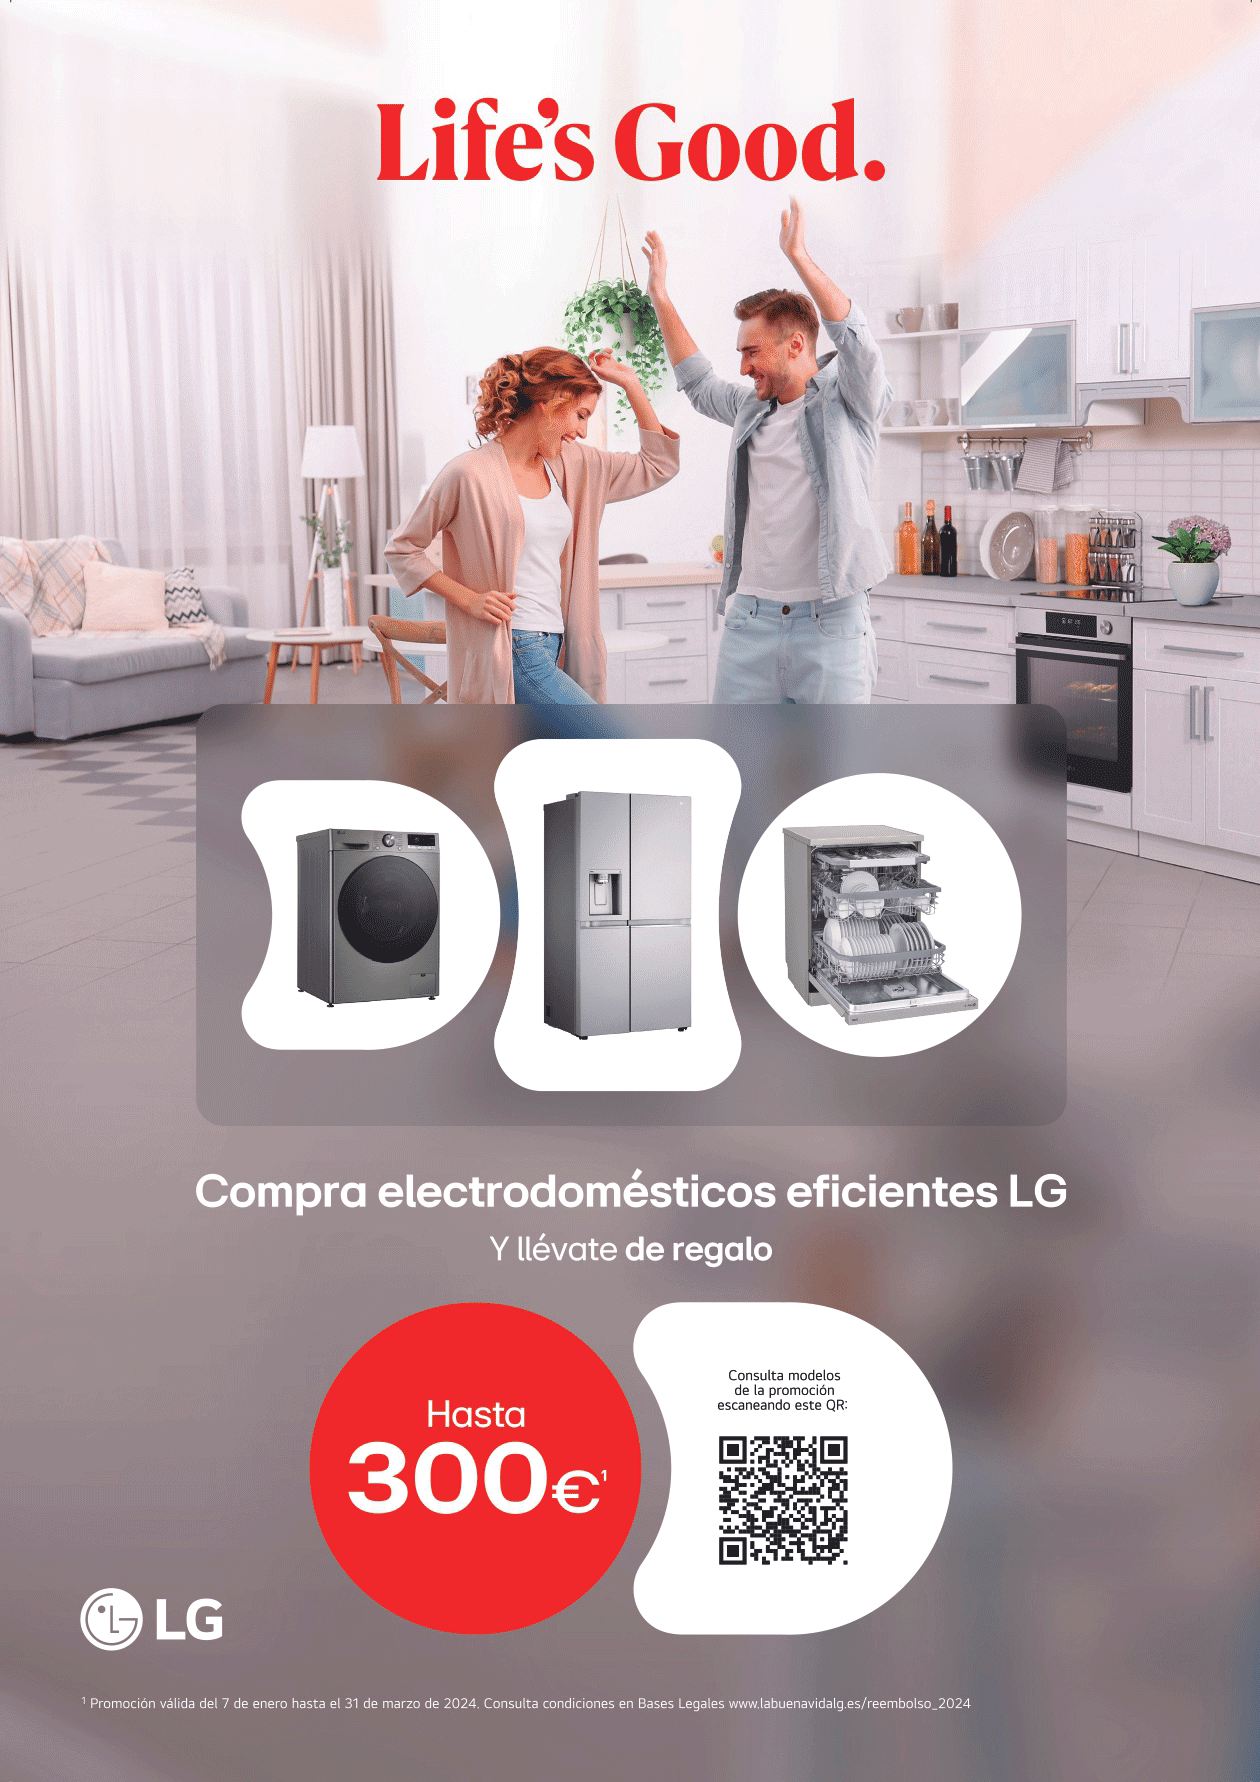 Hasta 300€ de regalo con electrodomésticos eficientes lg